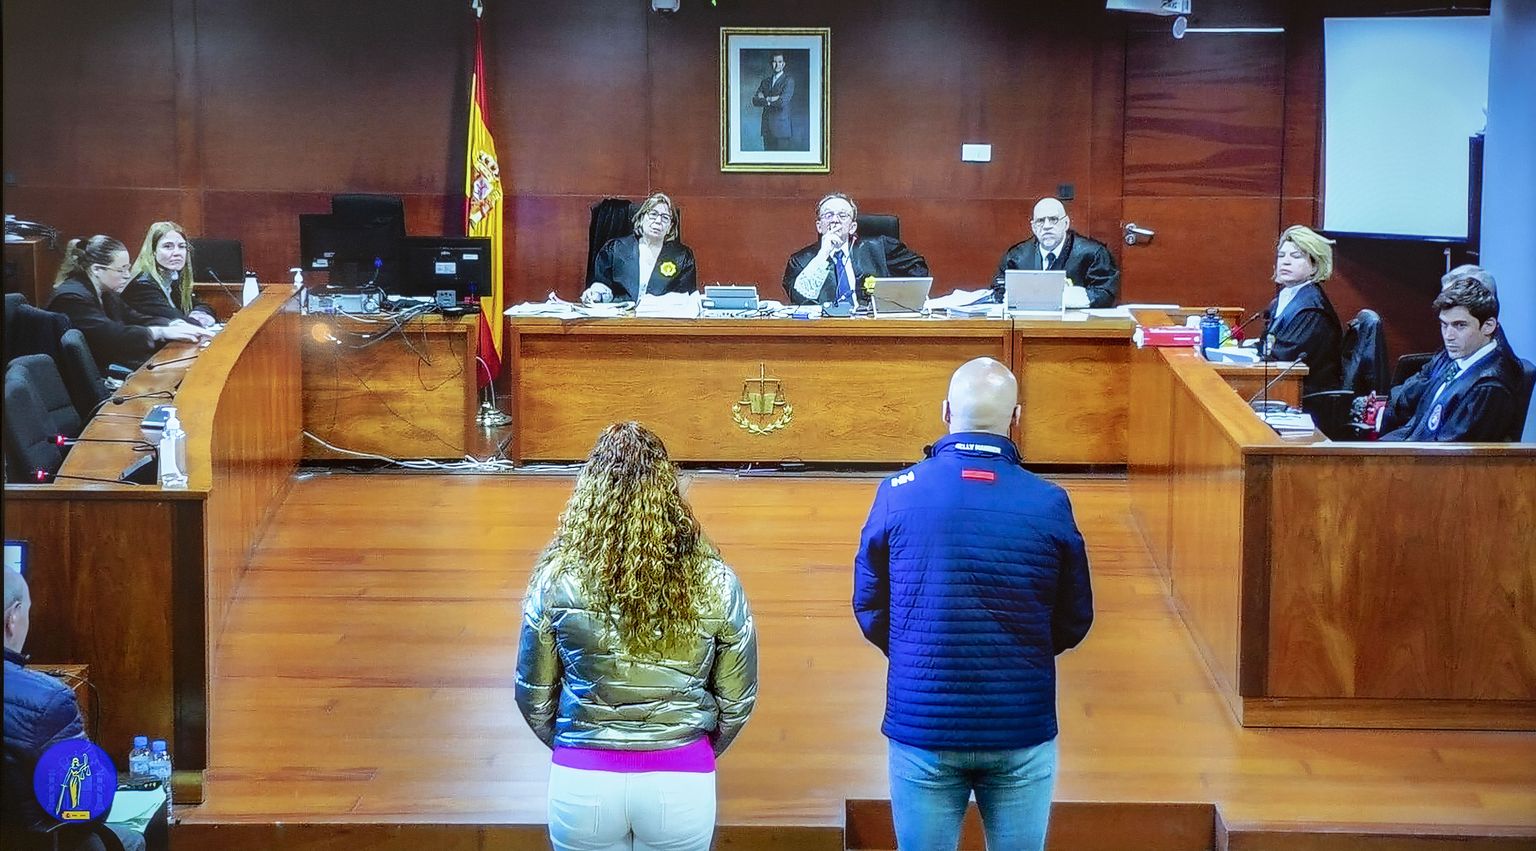 Hispaania Extremadura kohus karistas 3. märtsil 2023 Priscila Lara Guevarat ja Constantín Dumitrut vanglakaristusega. Paar varastas 2021 Hispaanias Cácereses  Atrio restorani veinikeldrist 45 pudelit veini, mille väärtus on 1,6 miljonit eurot